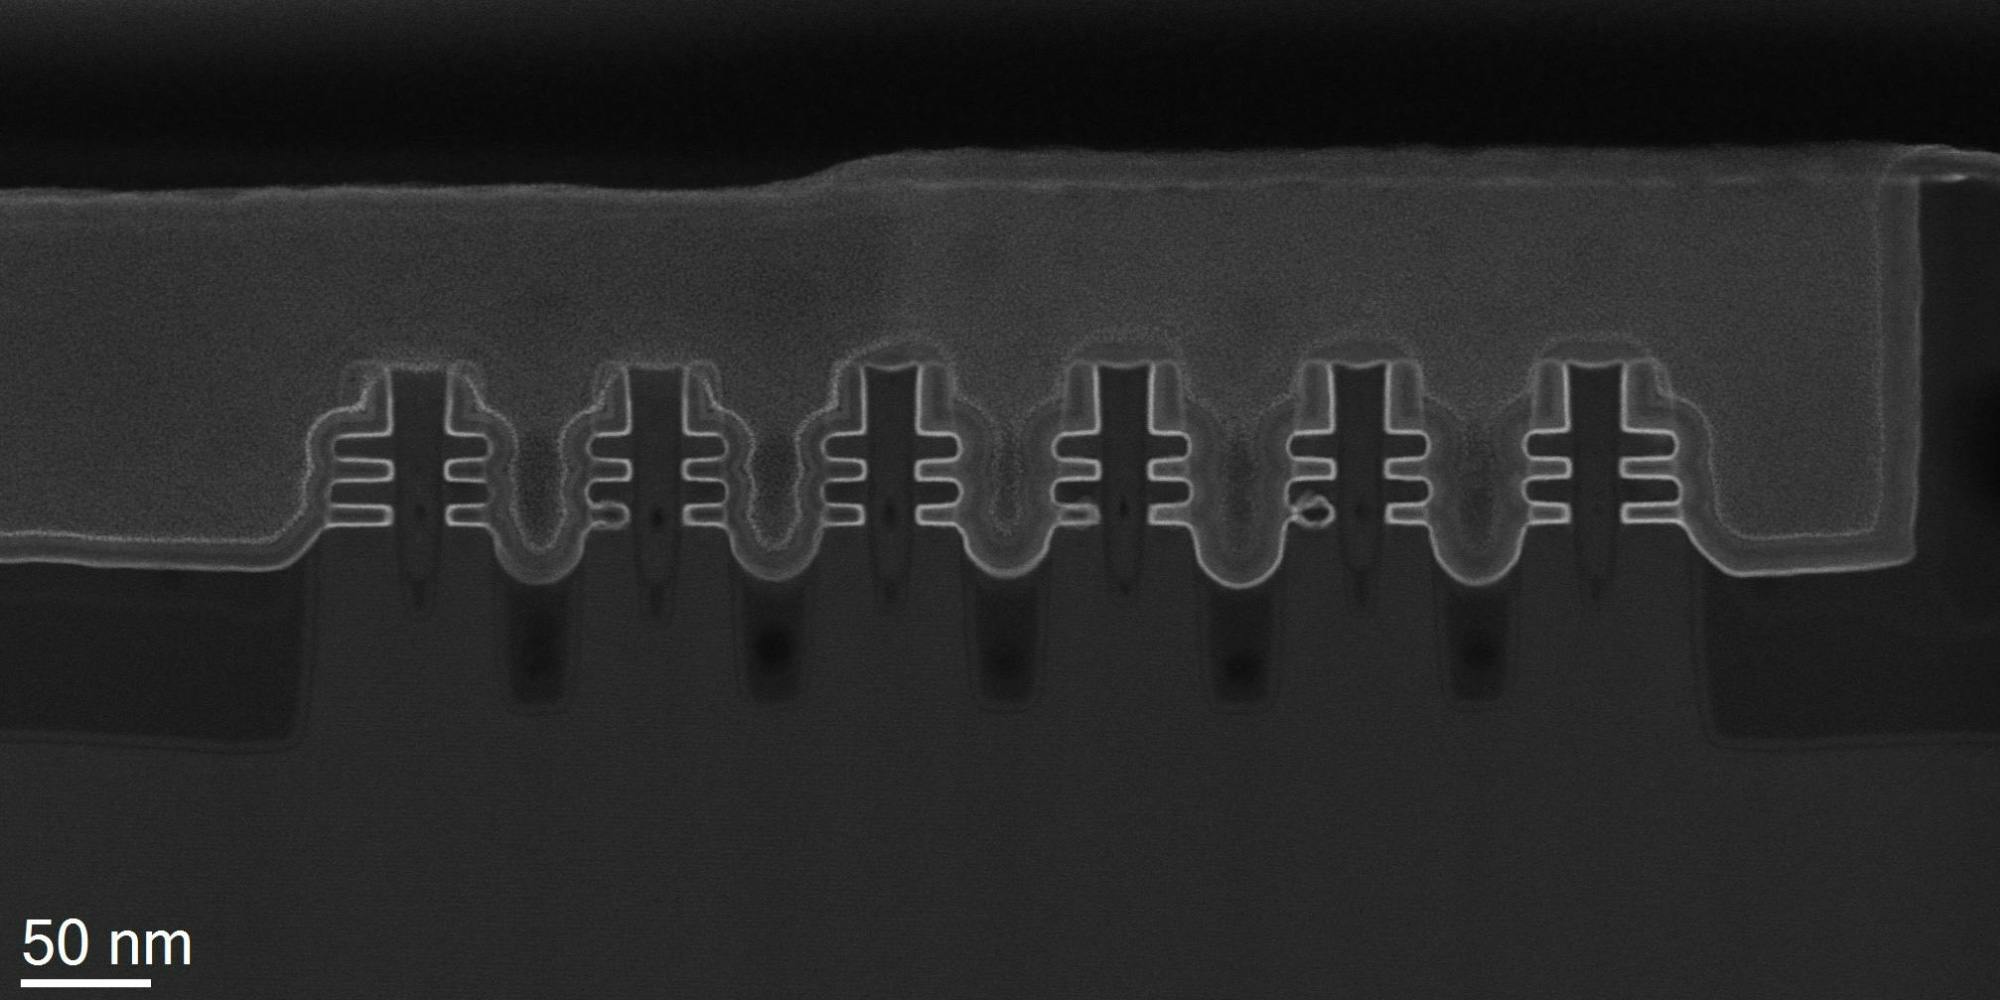 Forksheet transistor